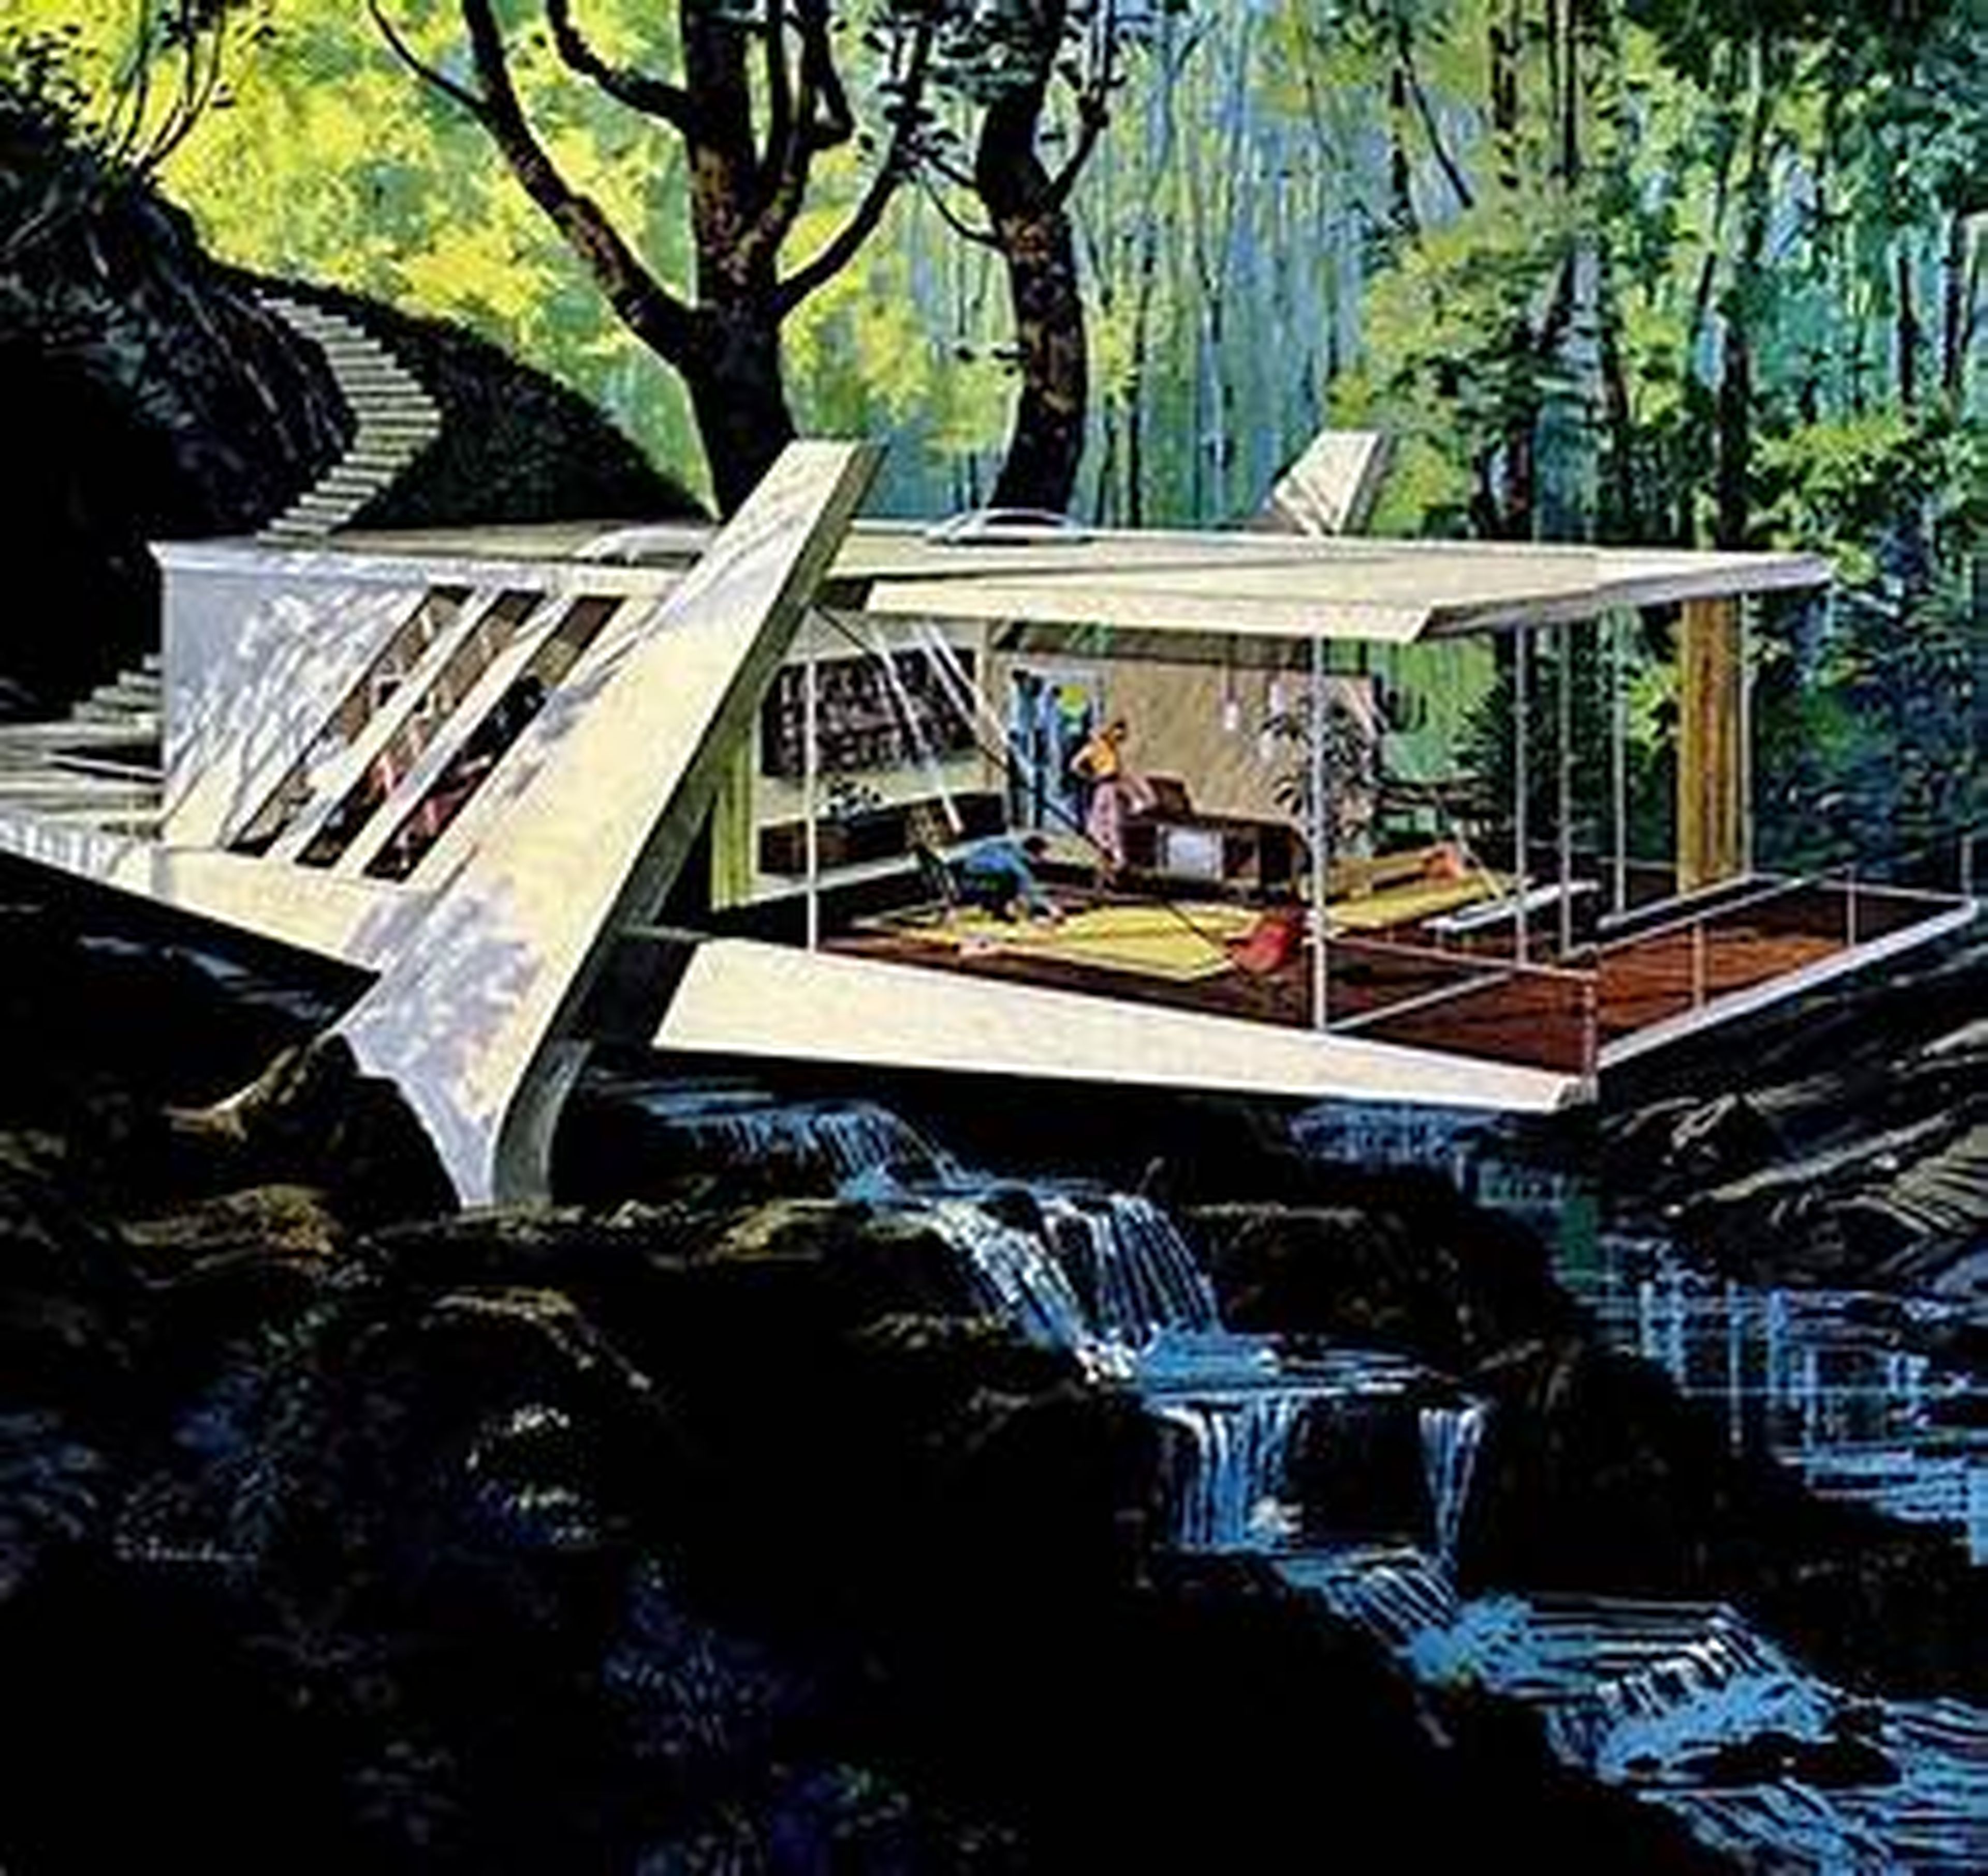 Casa del futuro imaginada por Arthur Radebaugh.